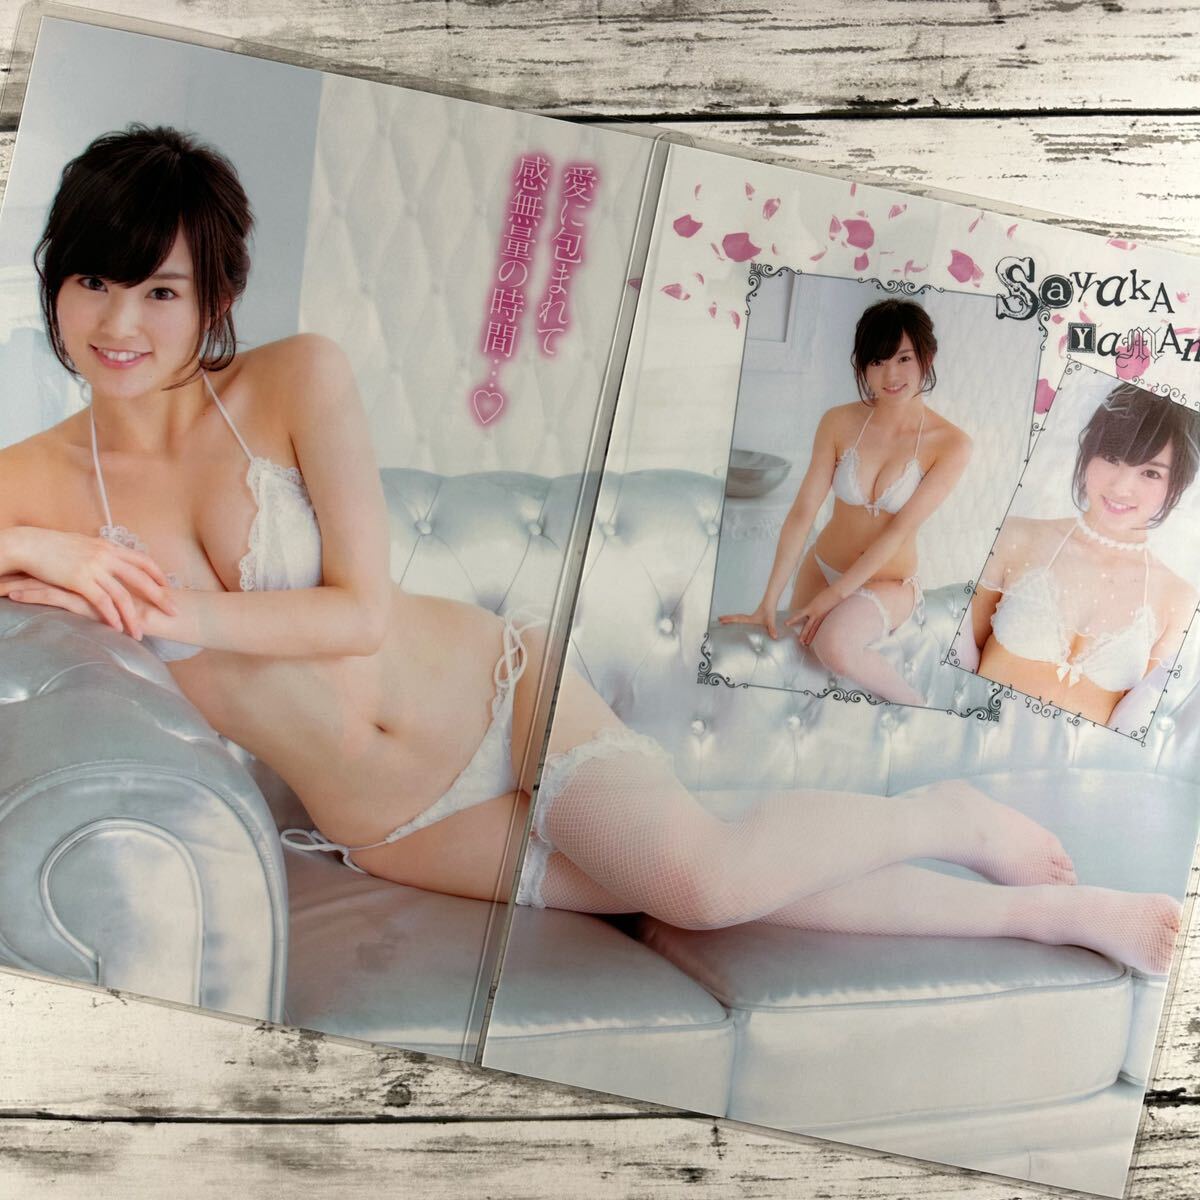 [ высокое качество ламинирование отделка ][ Yamamoto Sayaka NMB48 ] Young Champion 2014 год 11 номер журнал вырезки 8 страница + обложка купальный костюм bikini model актер женщина super 